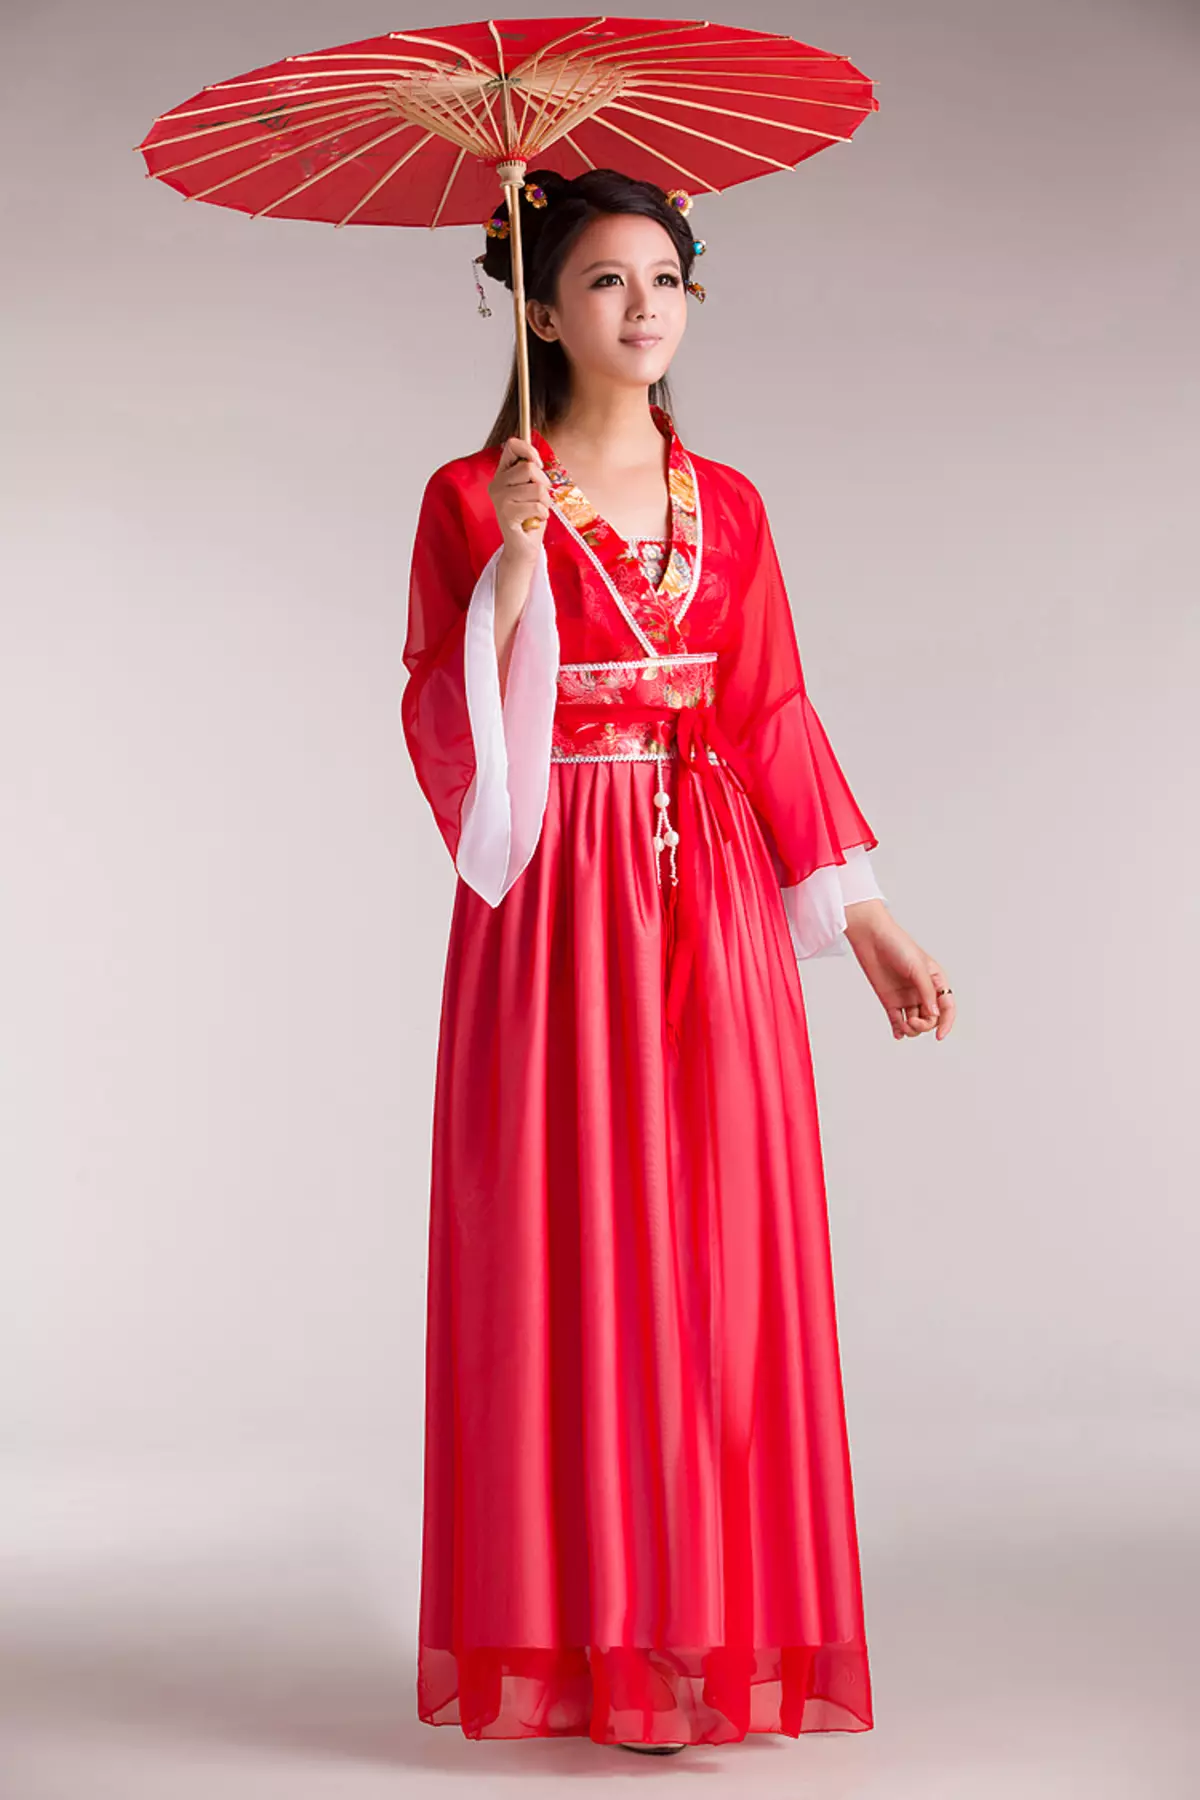 החליפה הלאומית הסינית (73 תמונות): תלבושת נקבה מסורתית של עמי סין, חליפה לילדה 1377_7